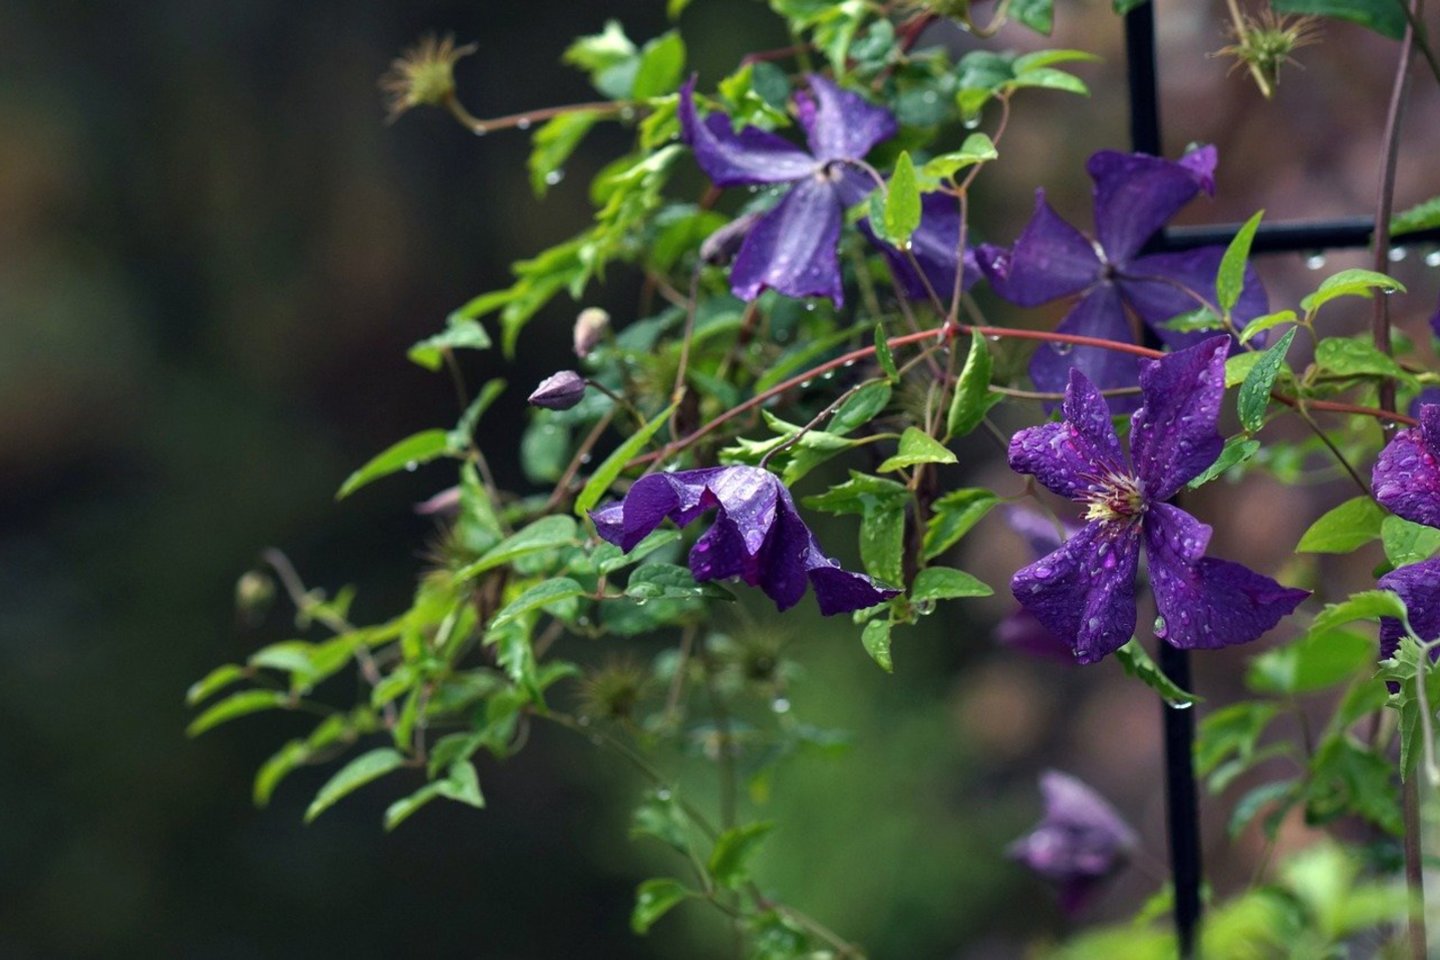 Raganės teisėtai gali vadintis sodo karalienėmis – labai nedaug vijoklinių augalų prilygtų joms žiedų įvairiaspalviškumu ir jų sandara.<br>Pixabay.com nuotr.